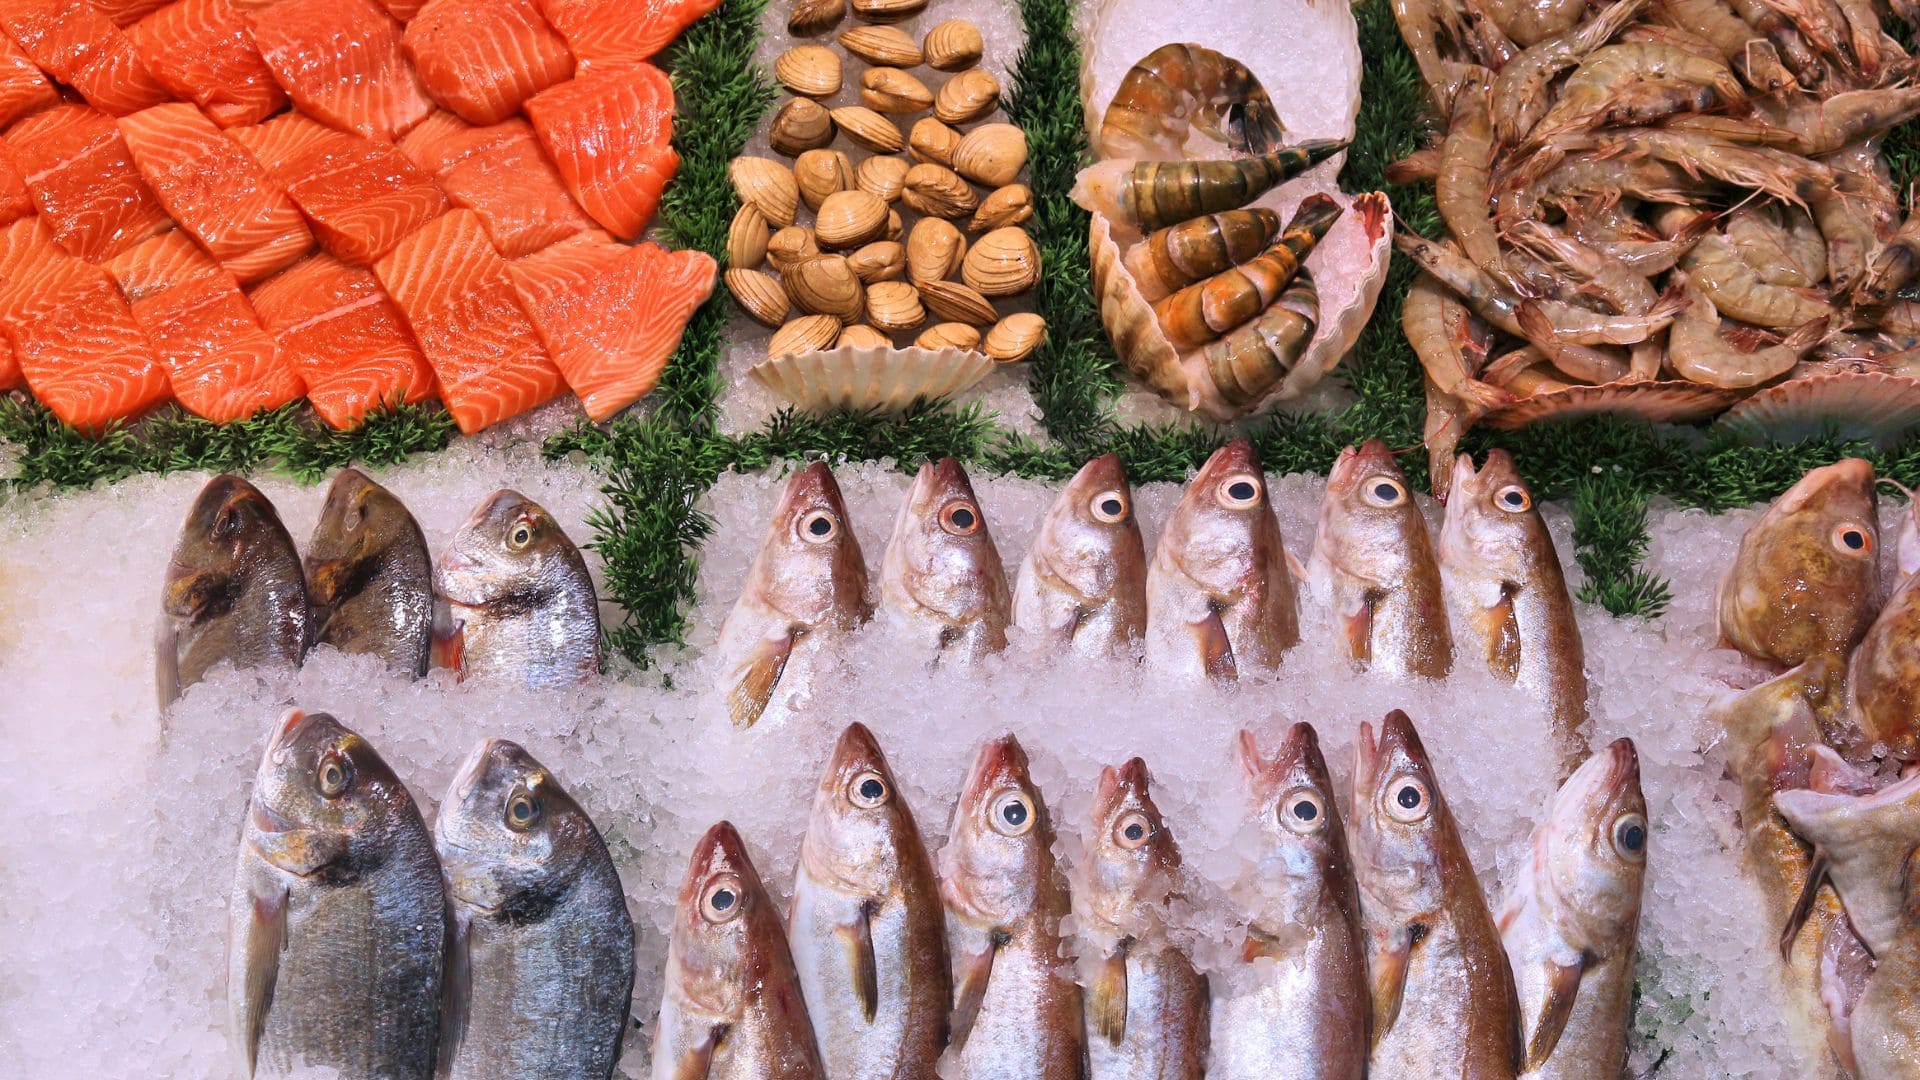 Estos son los mejores supermercados para comprar pescado fresco según la OCU